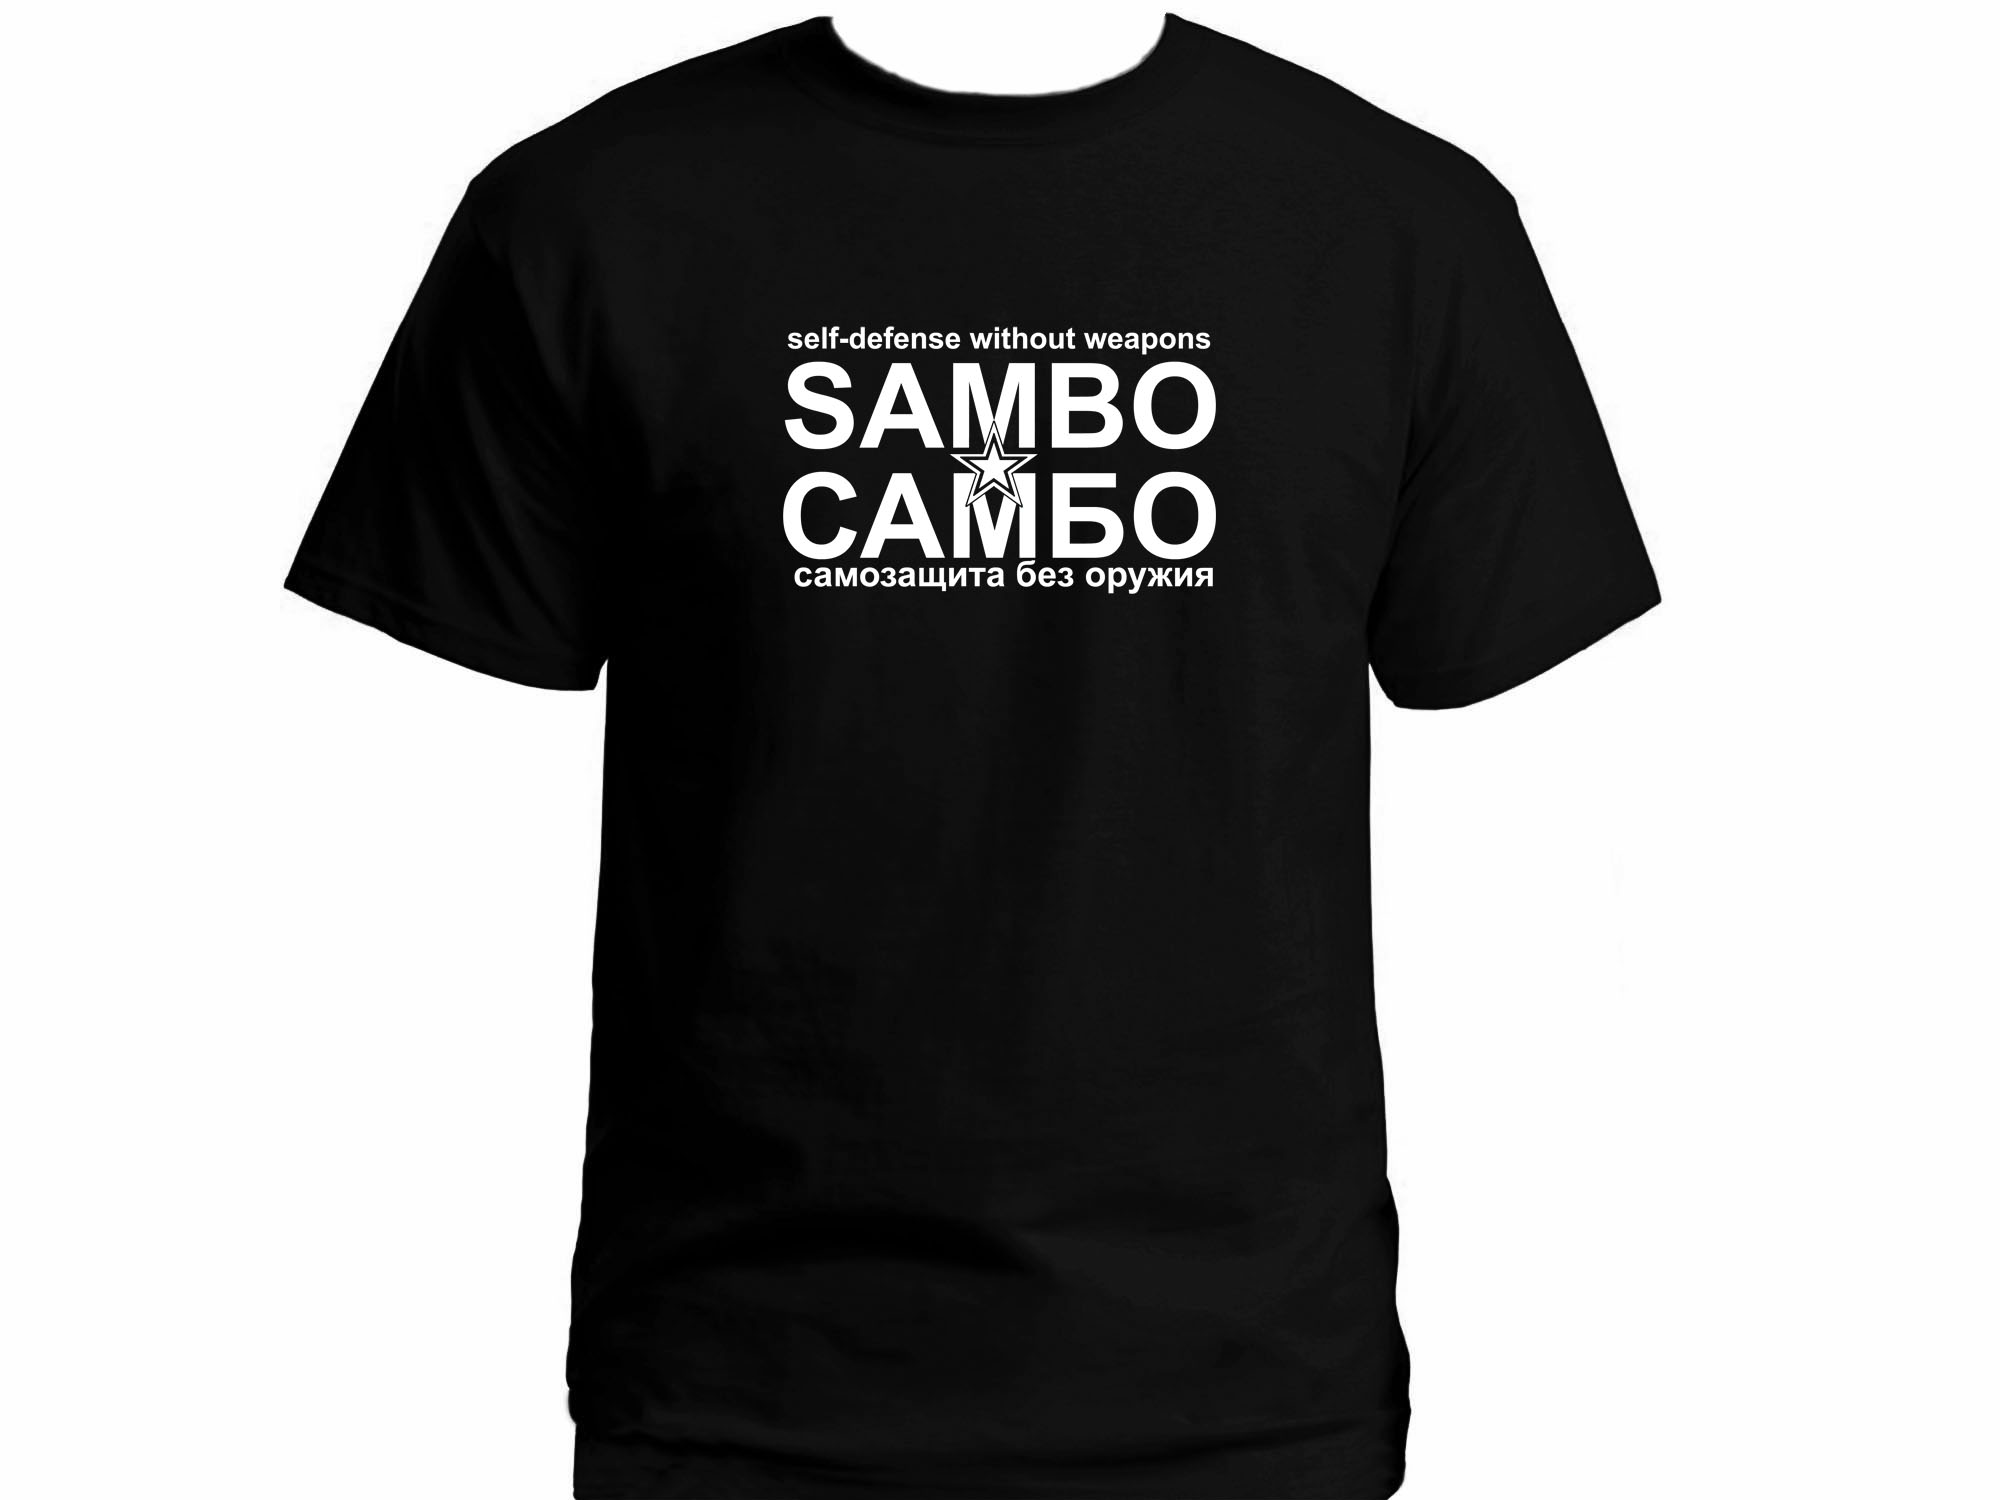 Sambo cambo t-shirt